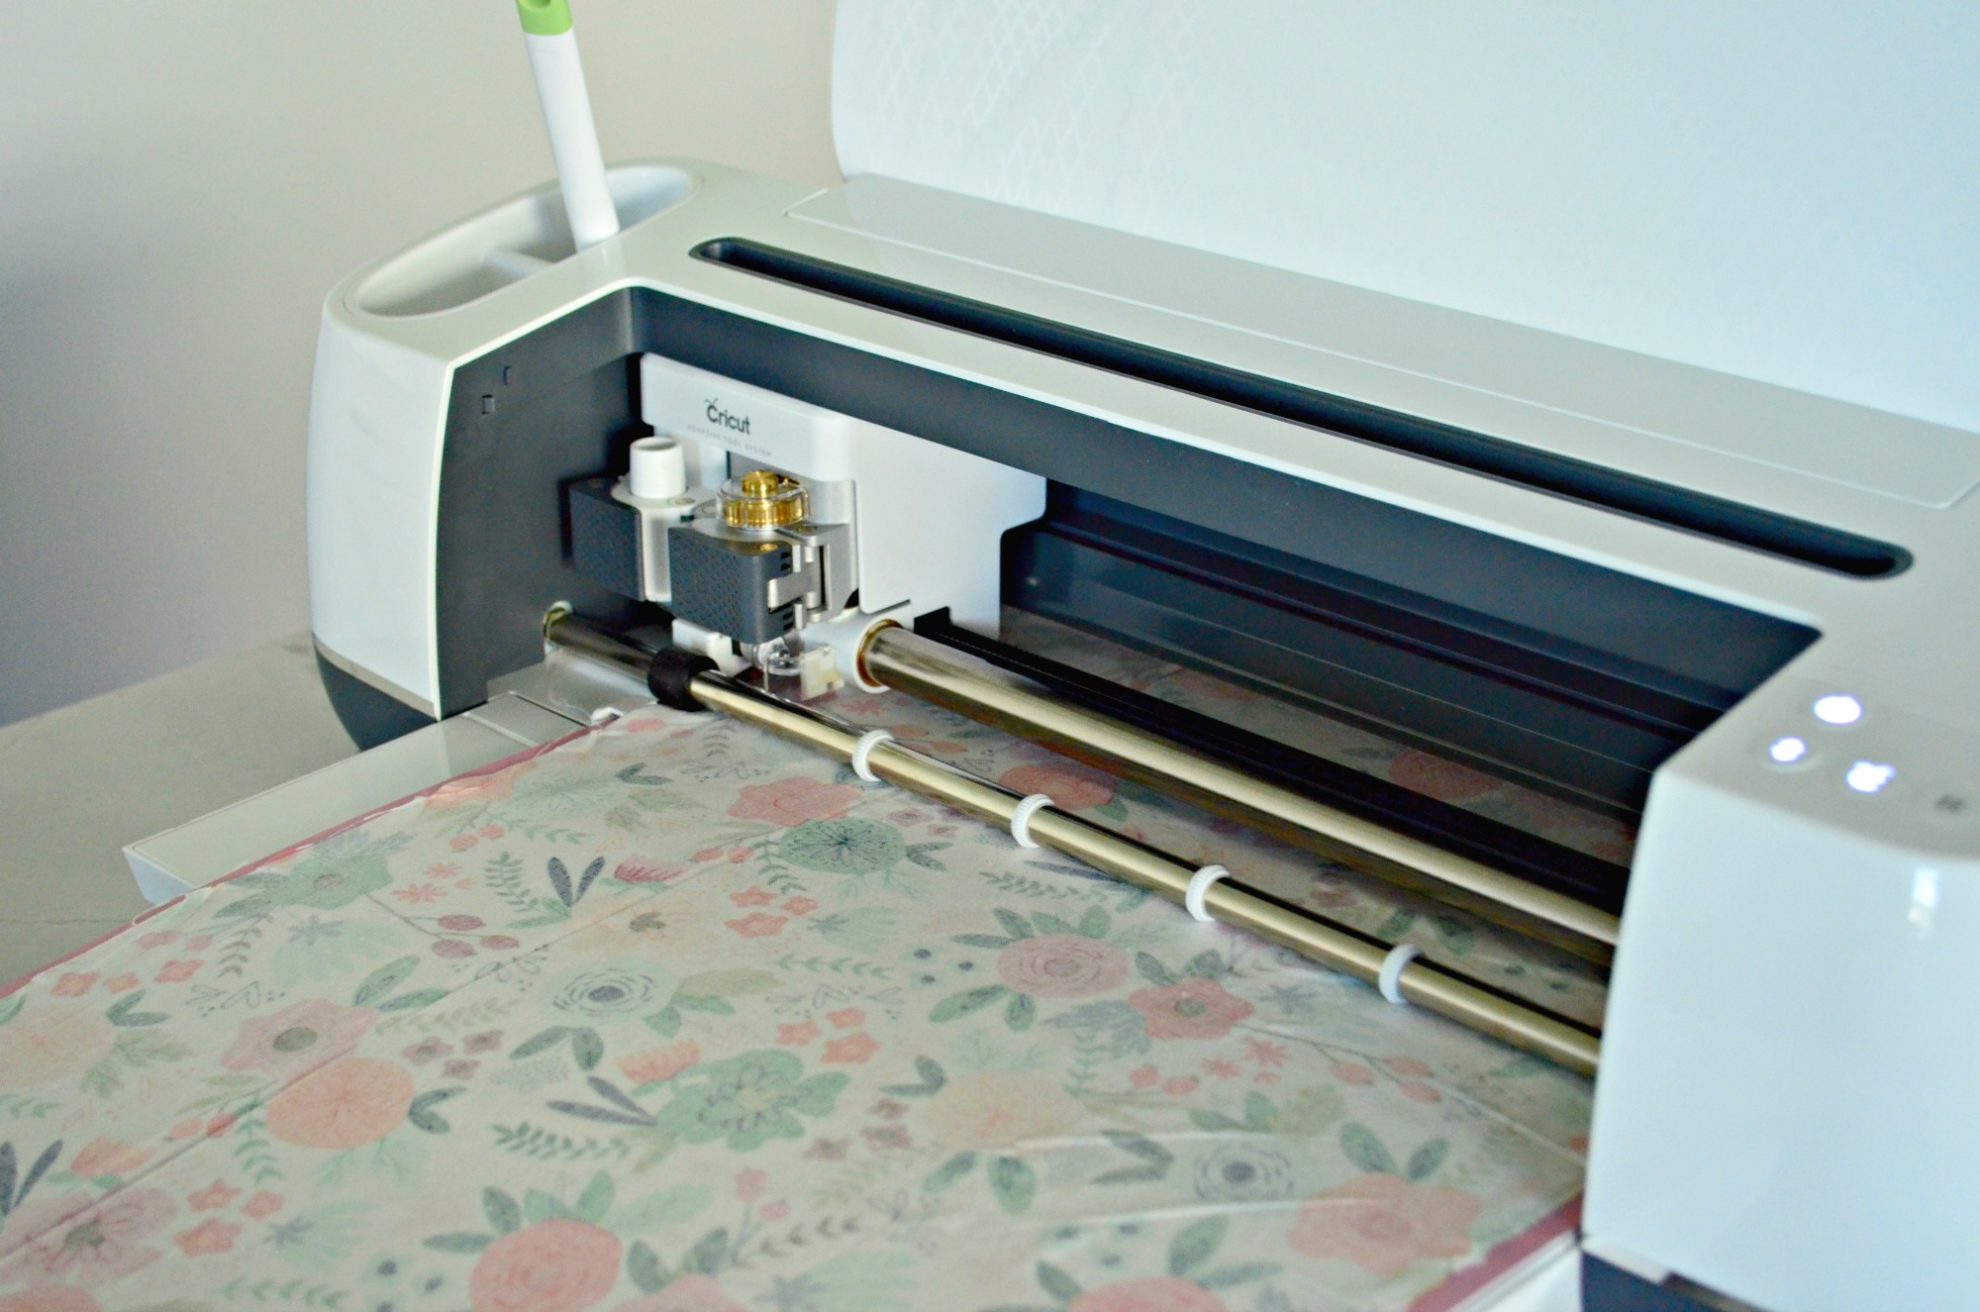 White Cricut Maker Cutting Fabric